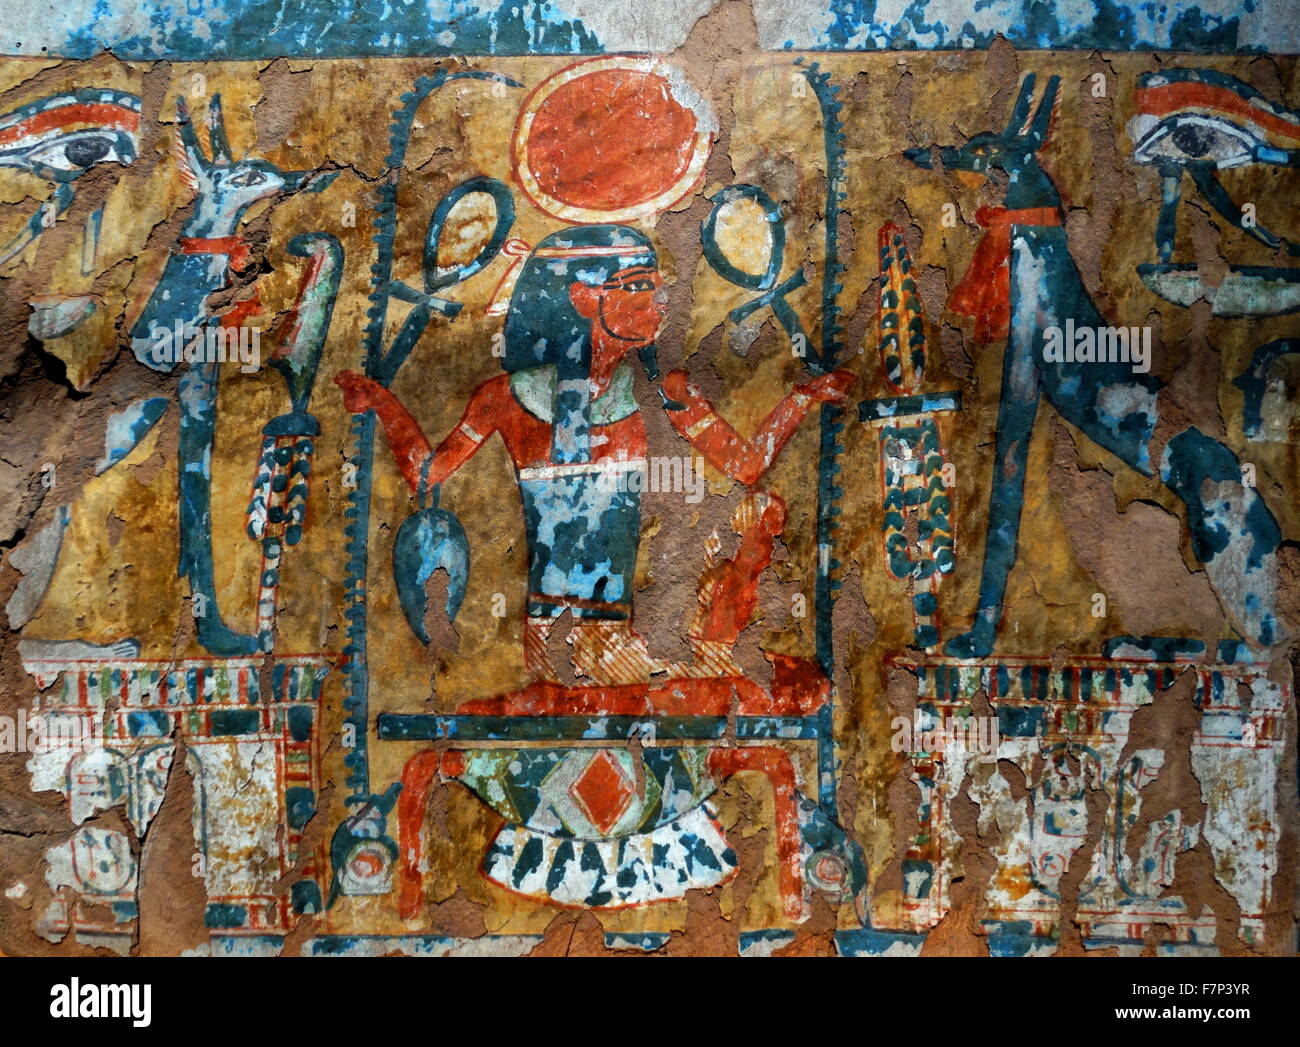 Un fragment de bois peint. 21e dynastie (1070-945 avant J.-C.) à partir d'une porte ou cercueil. Au milieu de la scène est le dieu Heh de genou sur le signe de l'or. Il est titulaire de l'ankh (la vie) et le signe pour renep (l'année). Ce n'est rapide sur un têtard bade (nombre 100,000), assis sur le nœud shen (l'éternité). L'iconographie est une claire allégorie de la vie éternelle. Dans le texte hiéroglyphique apparaissent les nomen et le praenomen d'Amenhotep dieu patron de la vie des artisans de Deir el-Wledina, plus probablement le site archéologique d'origine de l'élément. Banque D'Images